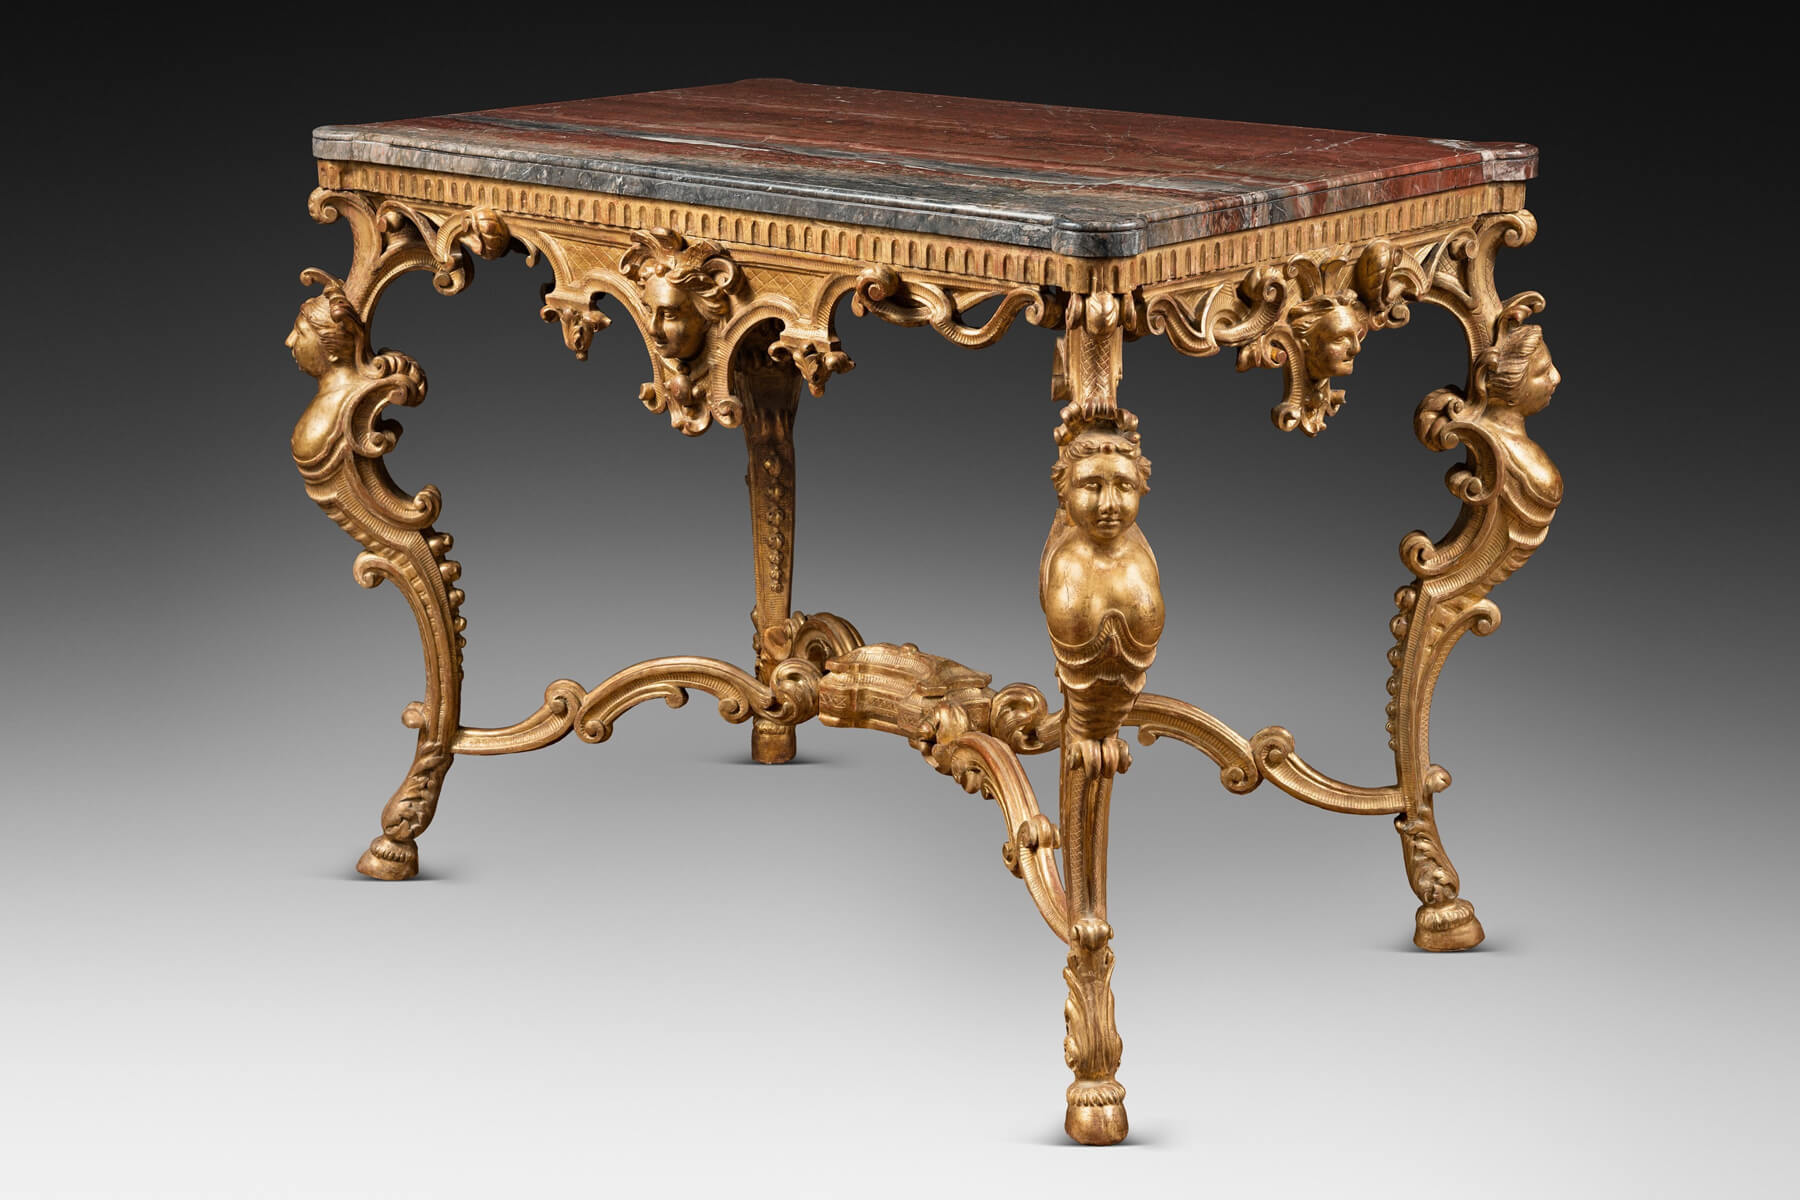 A Mid 18th Century gilt wood center-table